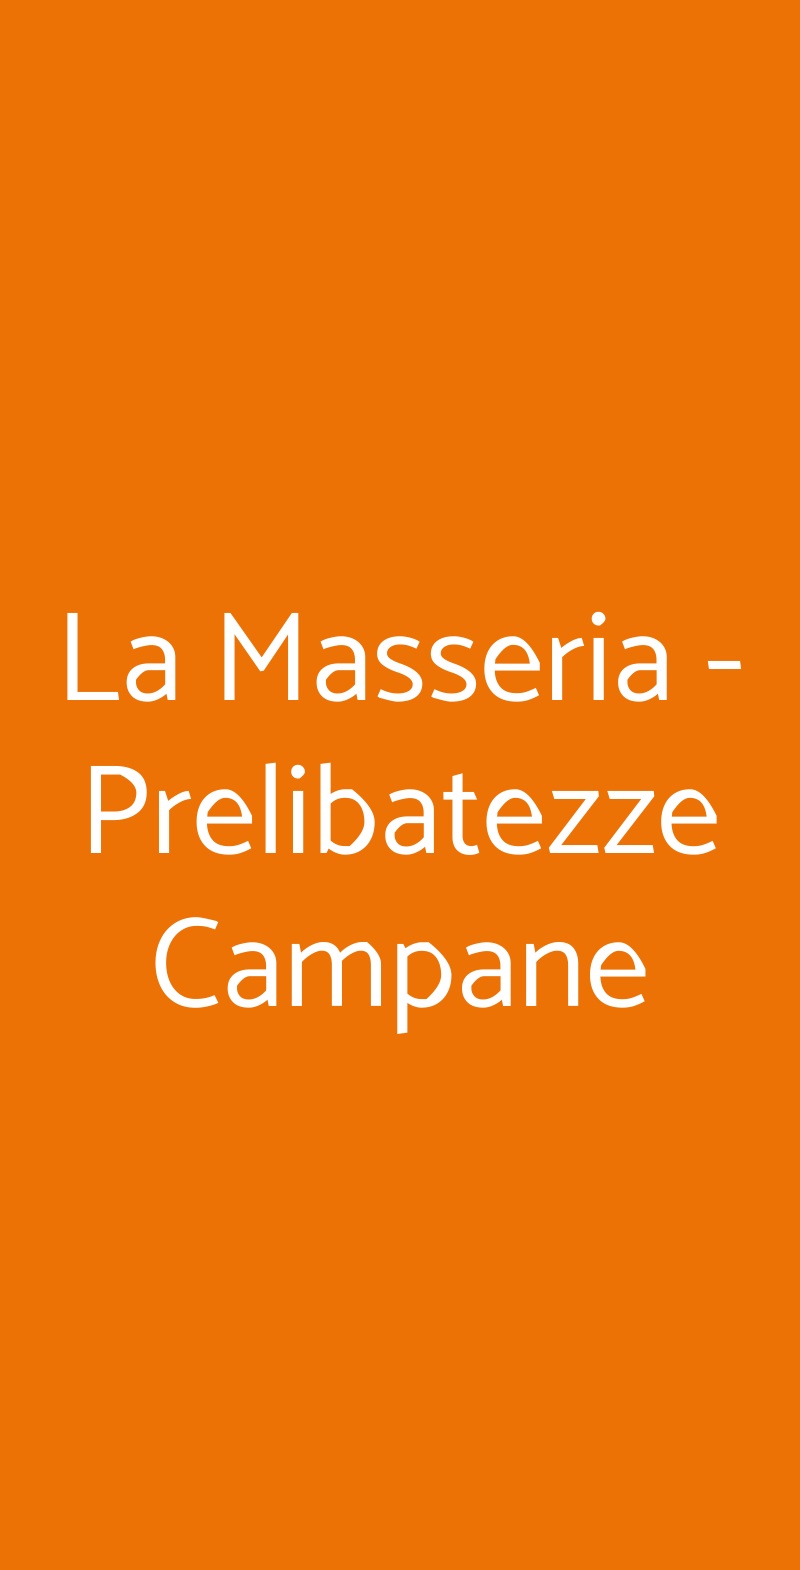 La Masseria - Prelibatezze Campane Montoro Inferiore menù 1 pagina